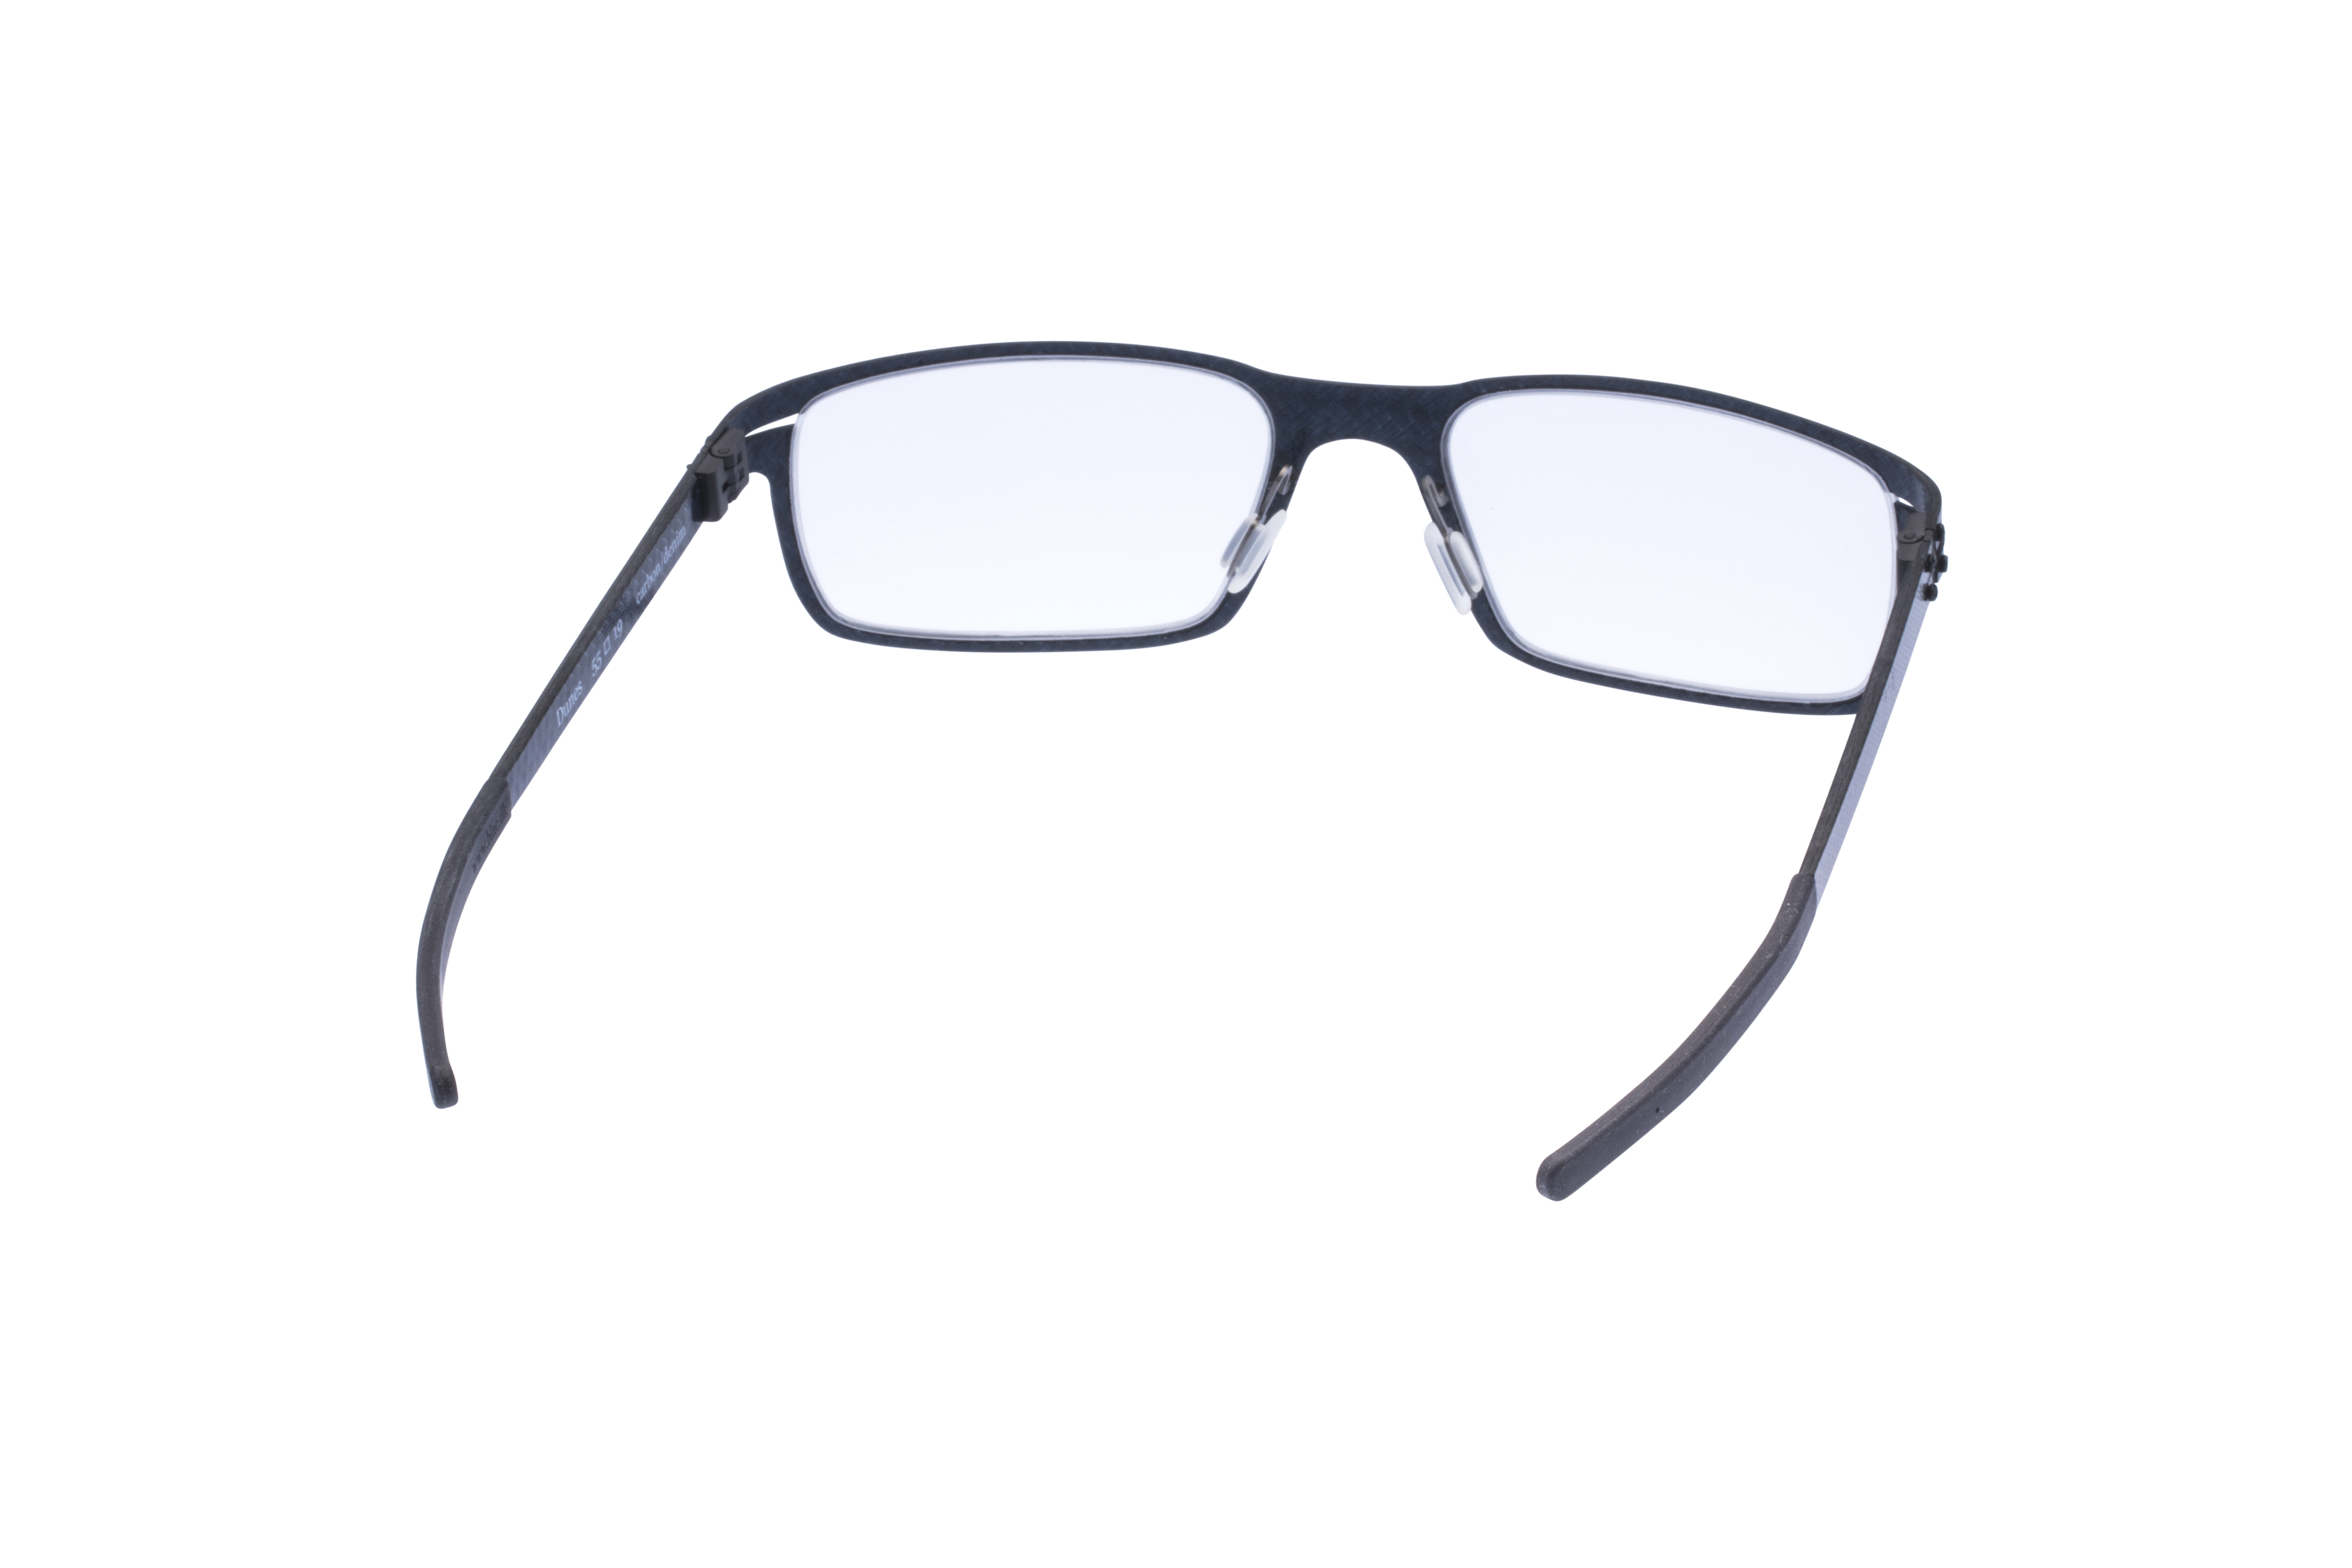 360 Grad Ansicht 11 Blac Dunes, Brille auf Weiß - Fassung bei KUNK